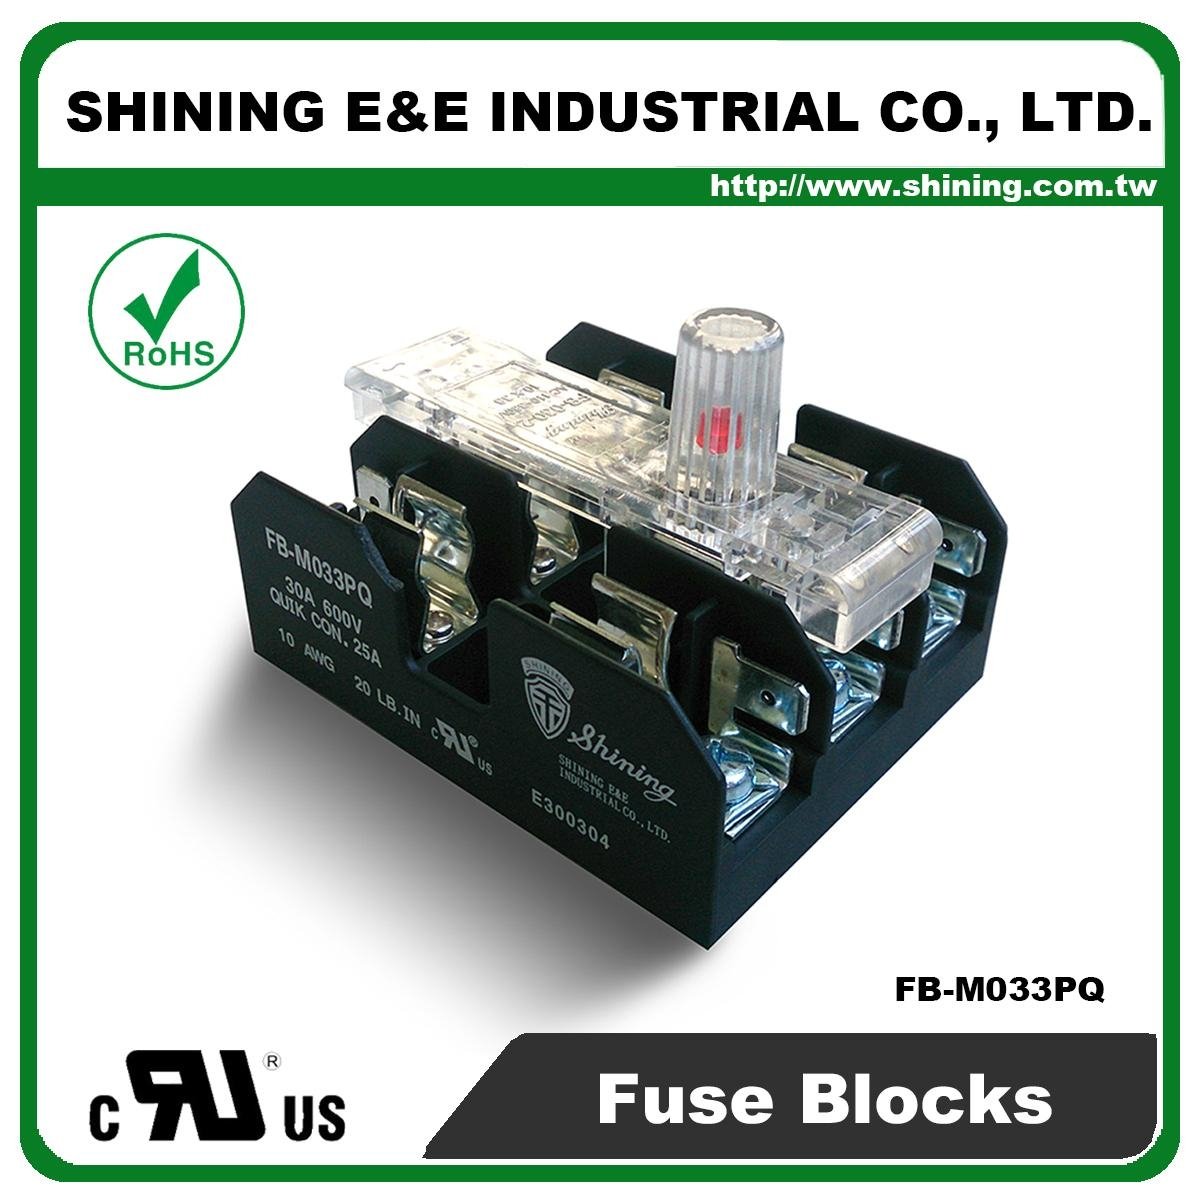 FB-M033PQ 10x38 30A 保險絲盒 Fuse Block 5